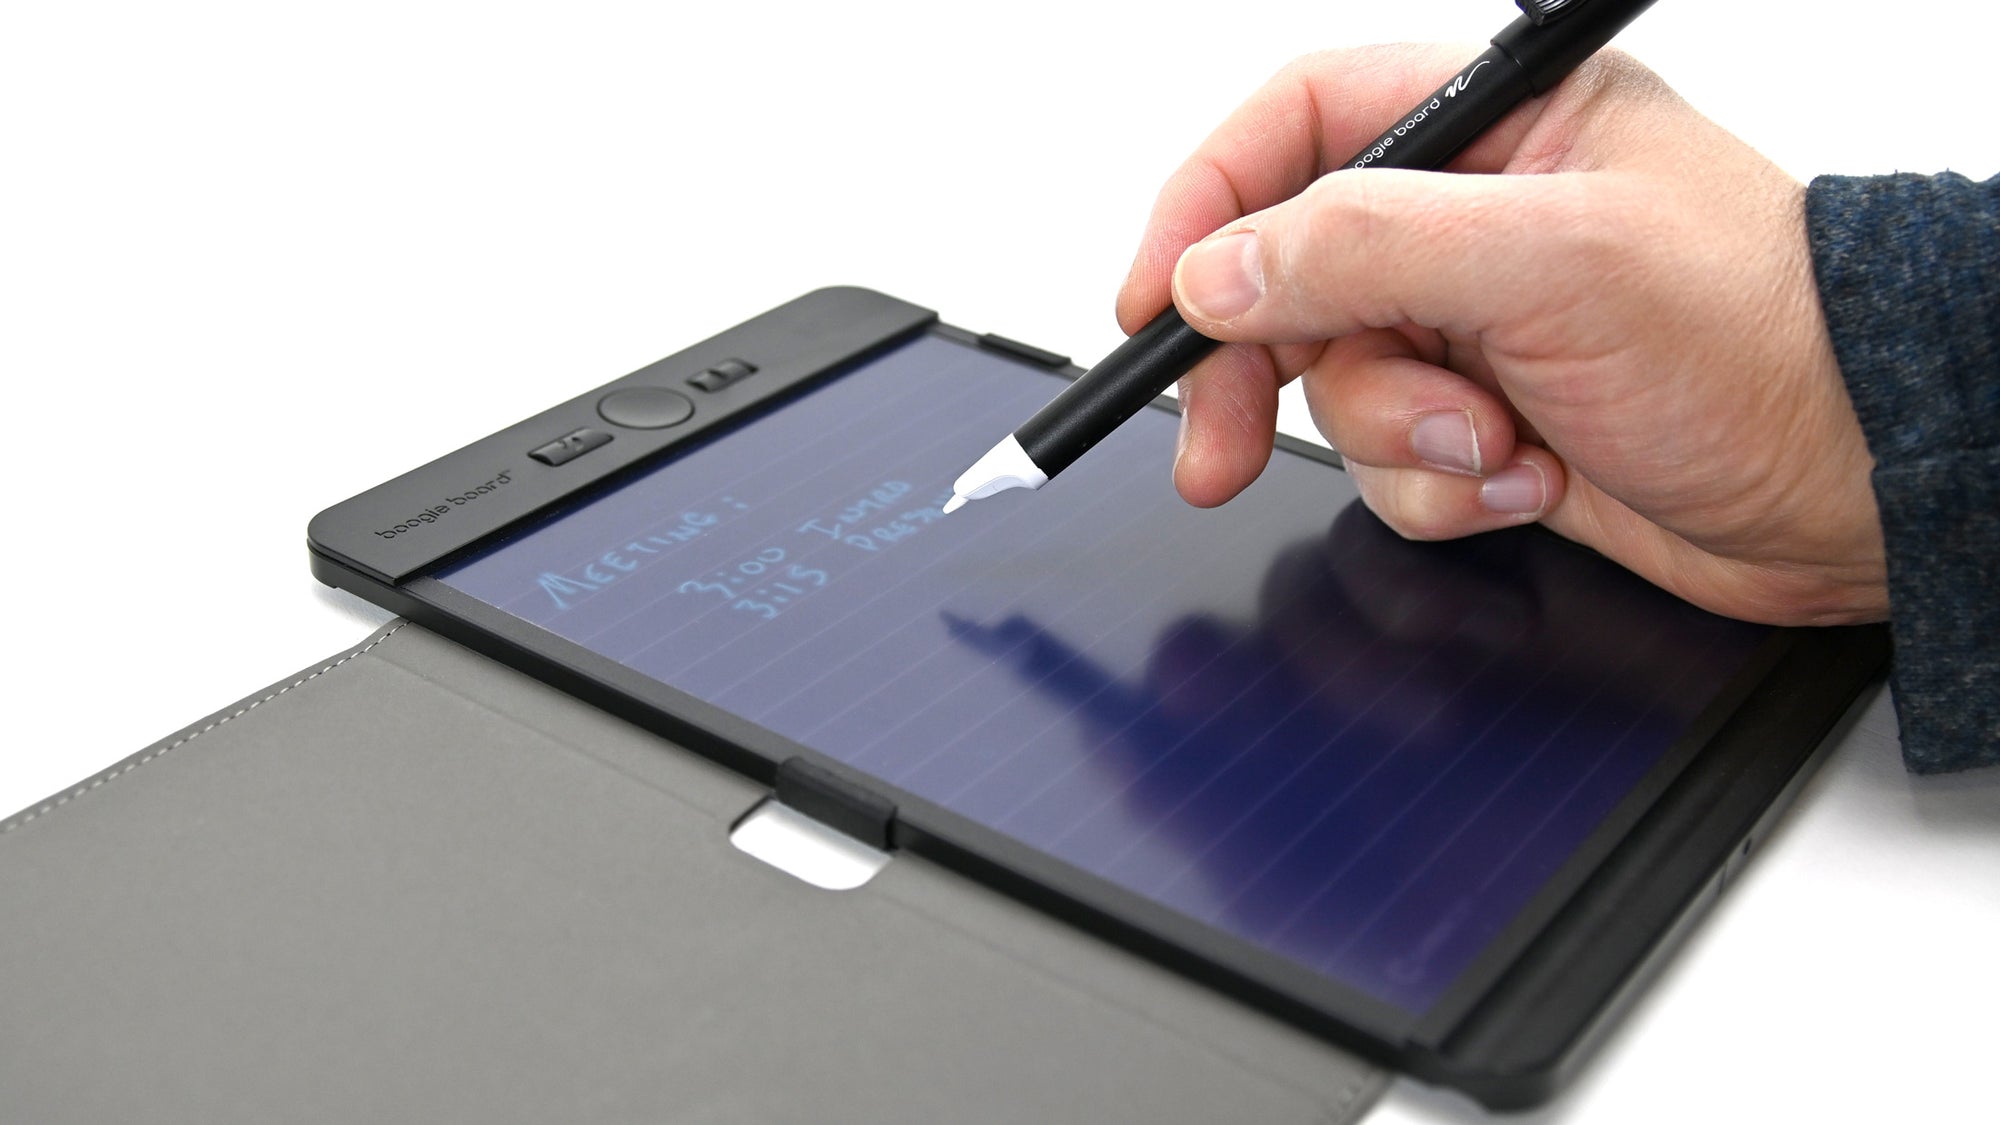 Boogie Board Blackboard Smart Notebook with Pen, 5.5 x 7.25, Black (BNCC10001)